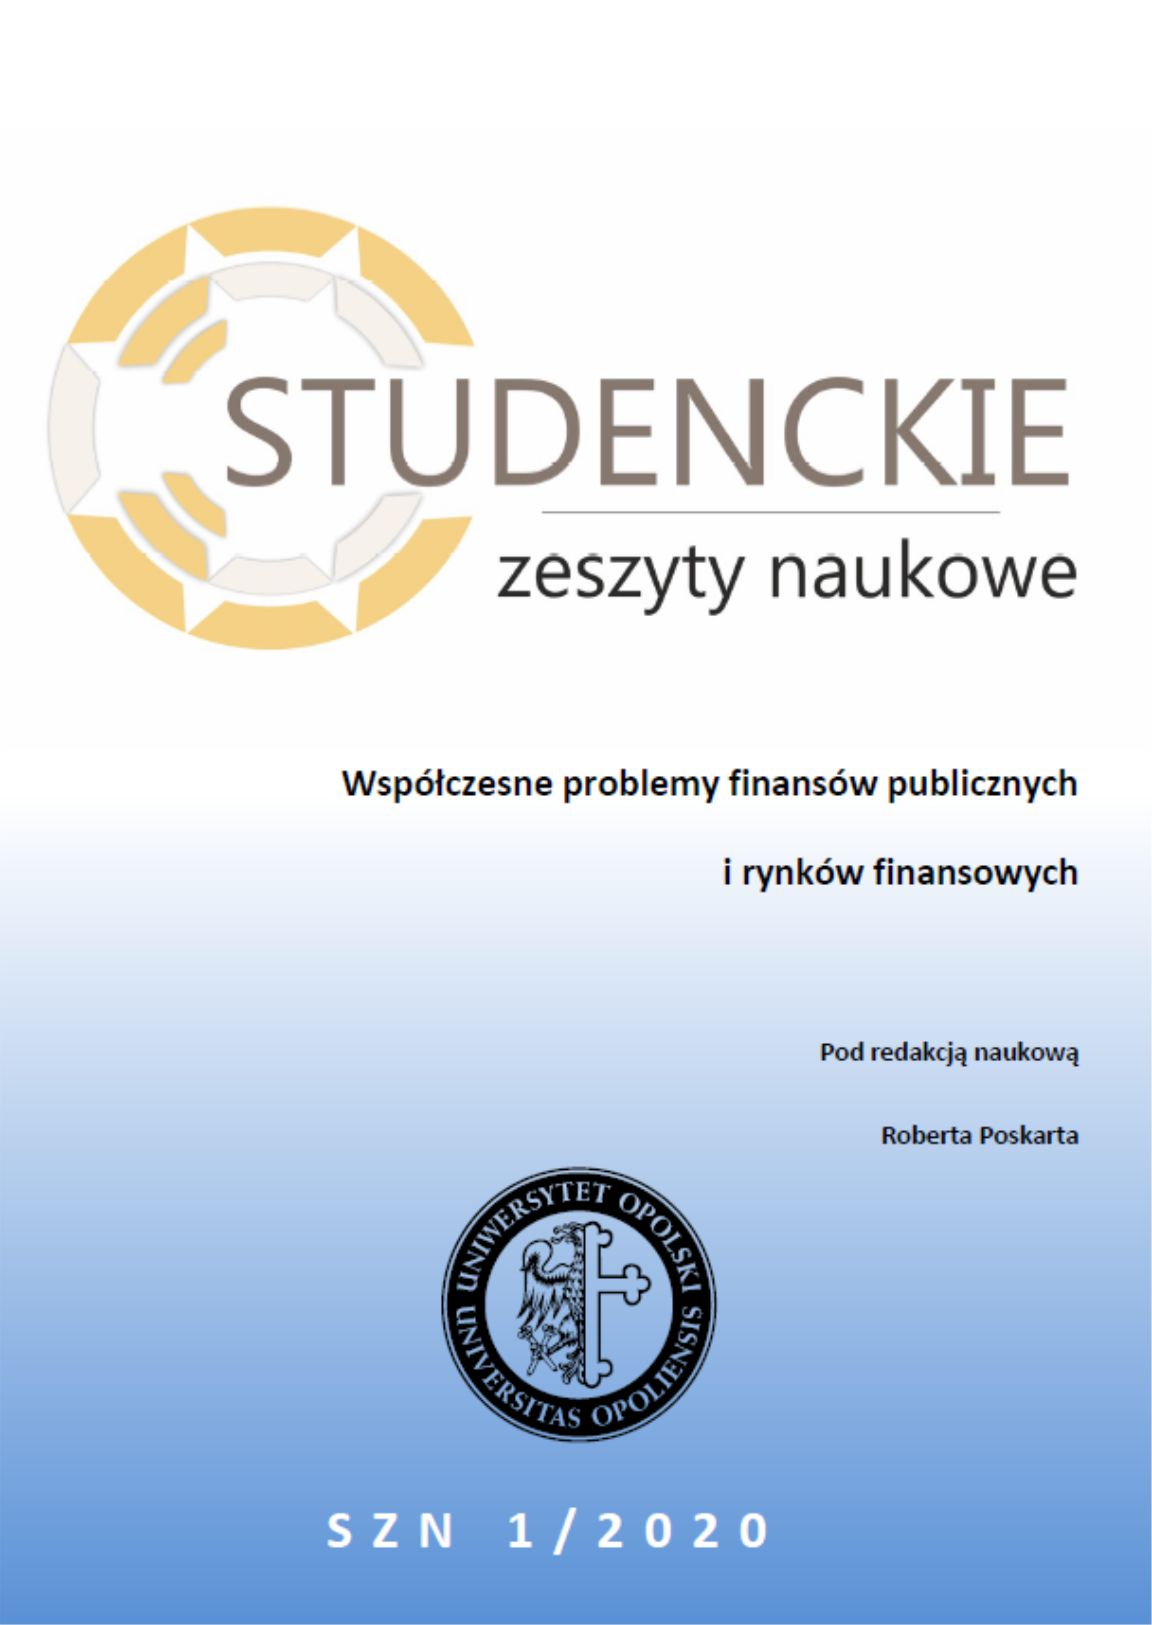 Studenckie Zeszyty Naukowe nr 2 - 2019